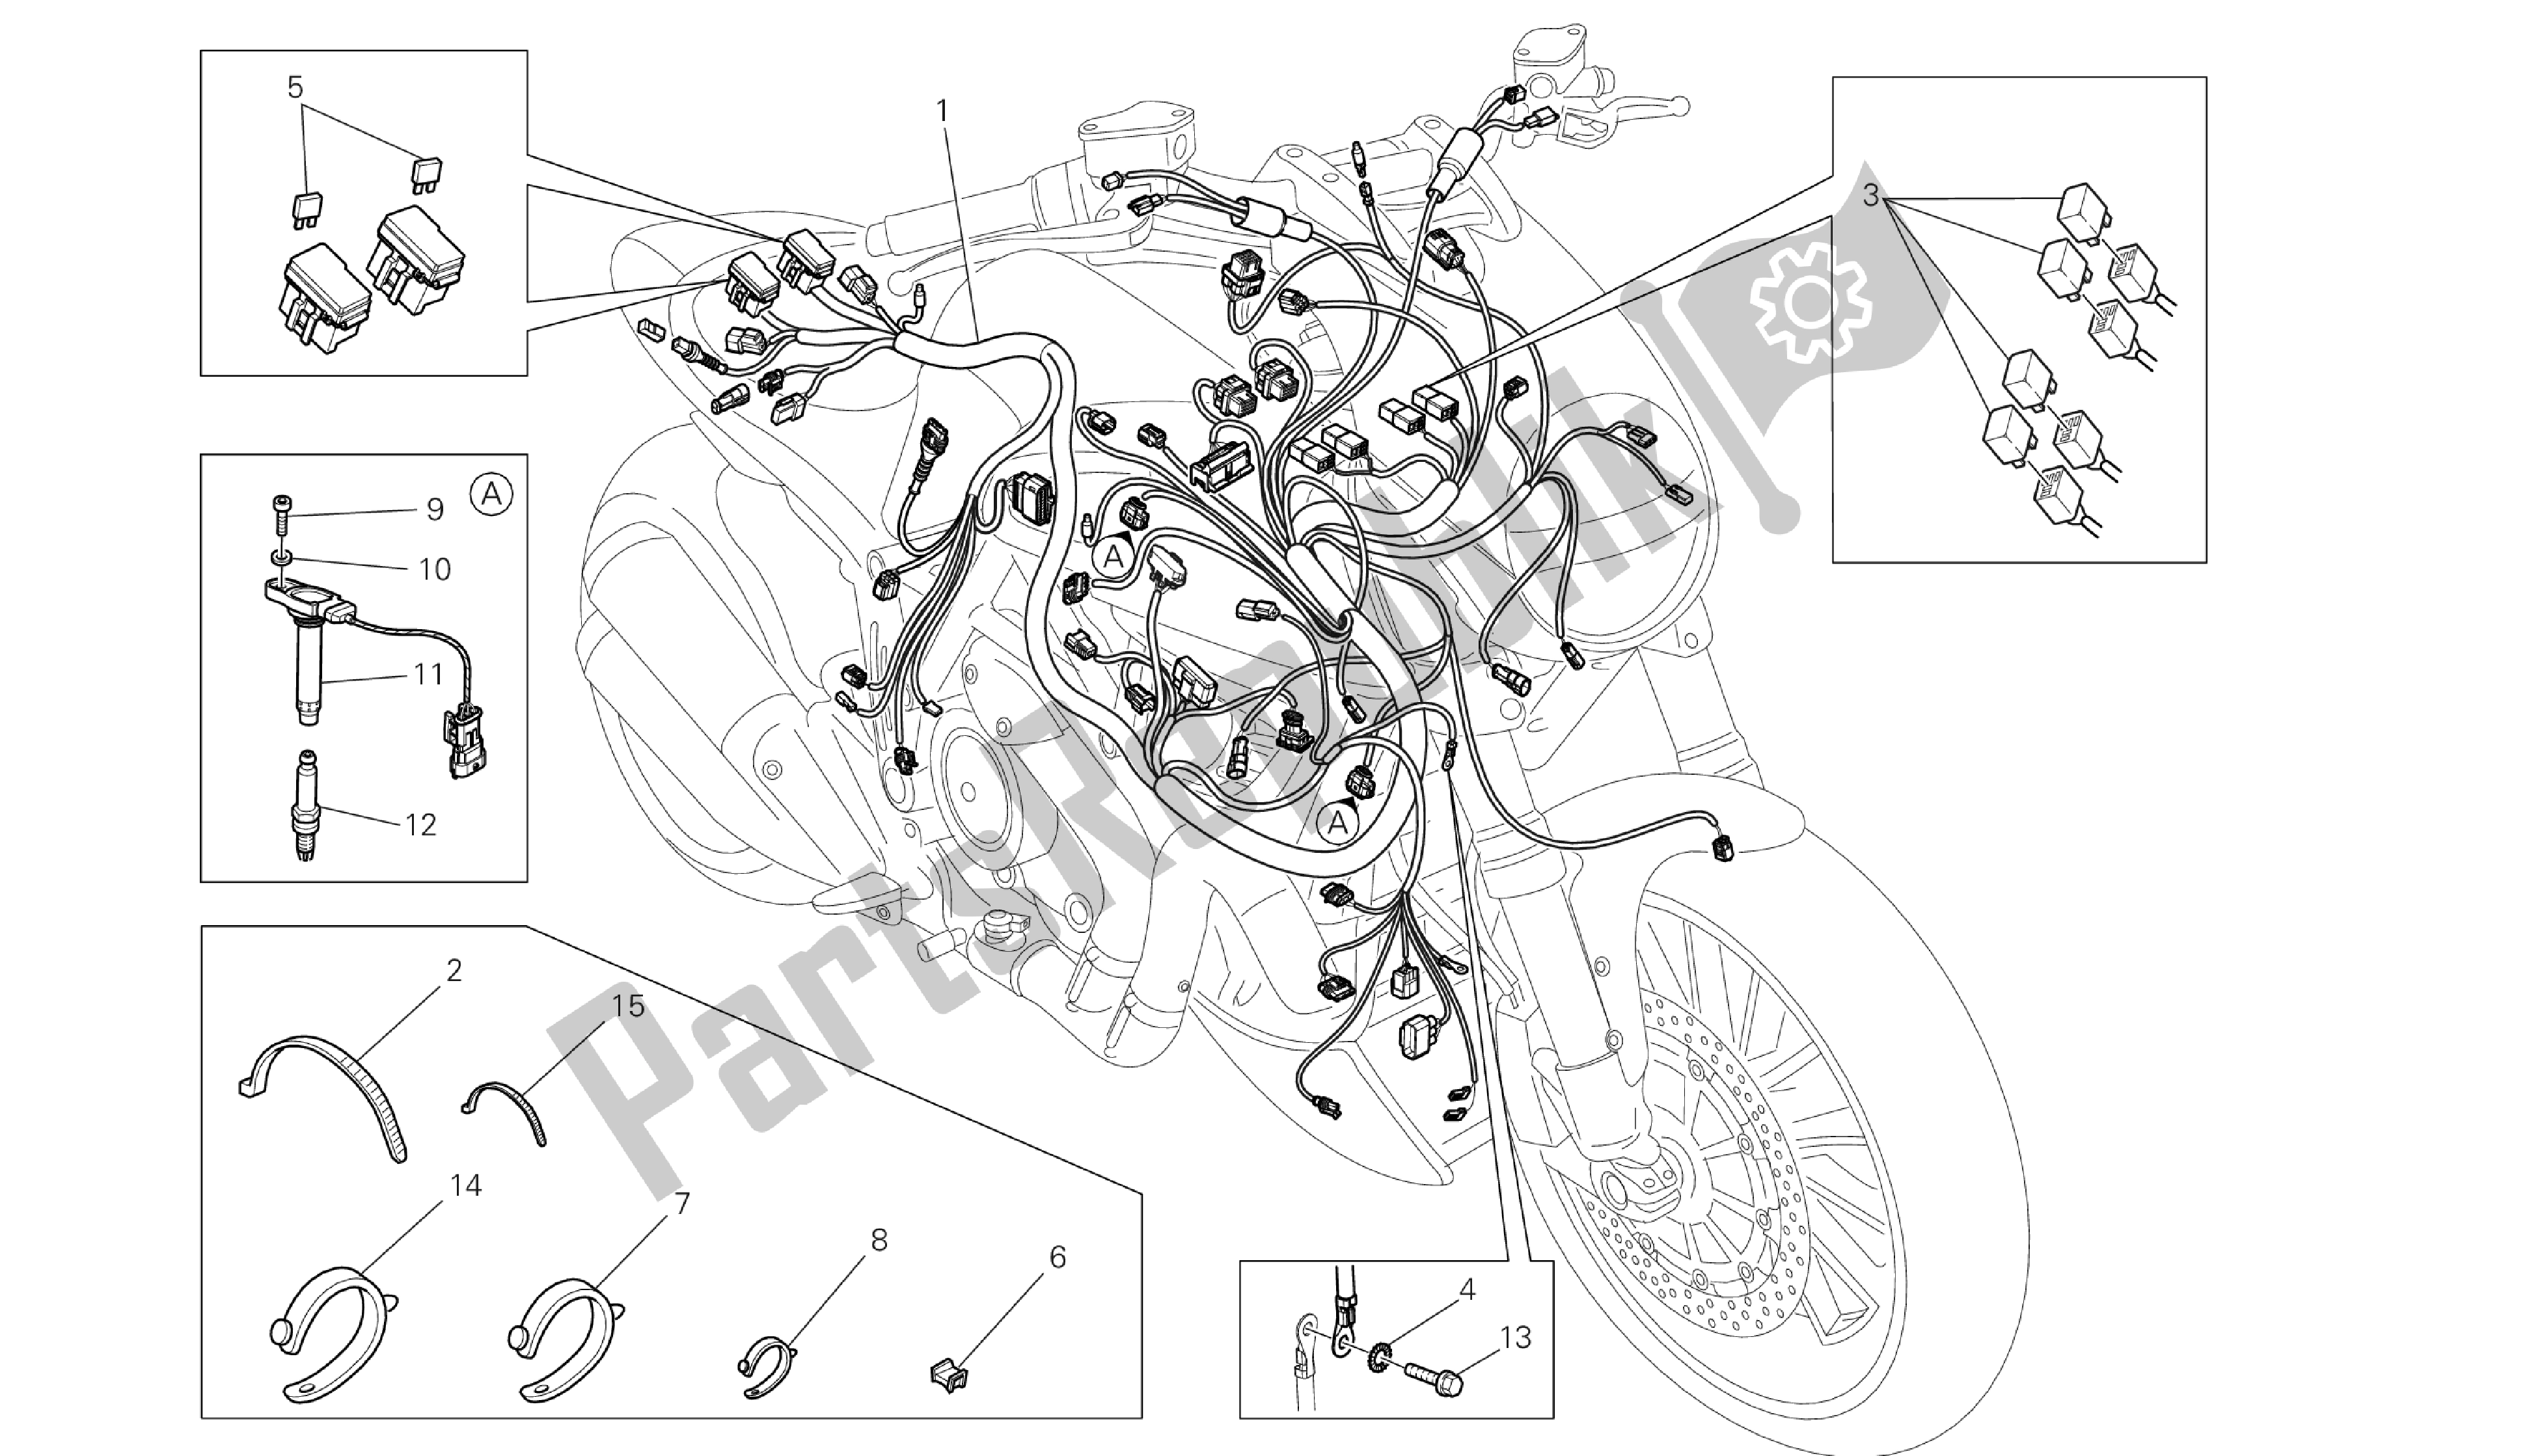 Todas las partes para Dibujo 18b - Mazo De Cables [m Od: Dvlc; Xst: Aus, Bra, Chn, Eur, Fra, Jap, Th Ai] Grupo Eléctrico de Ducati Diavel Carbon 1200 2013